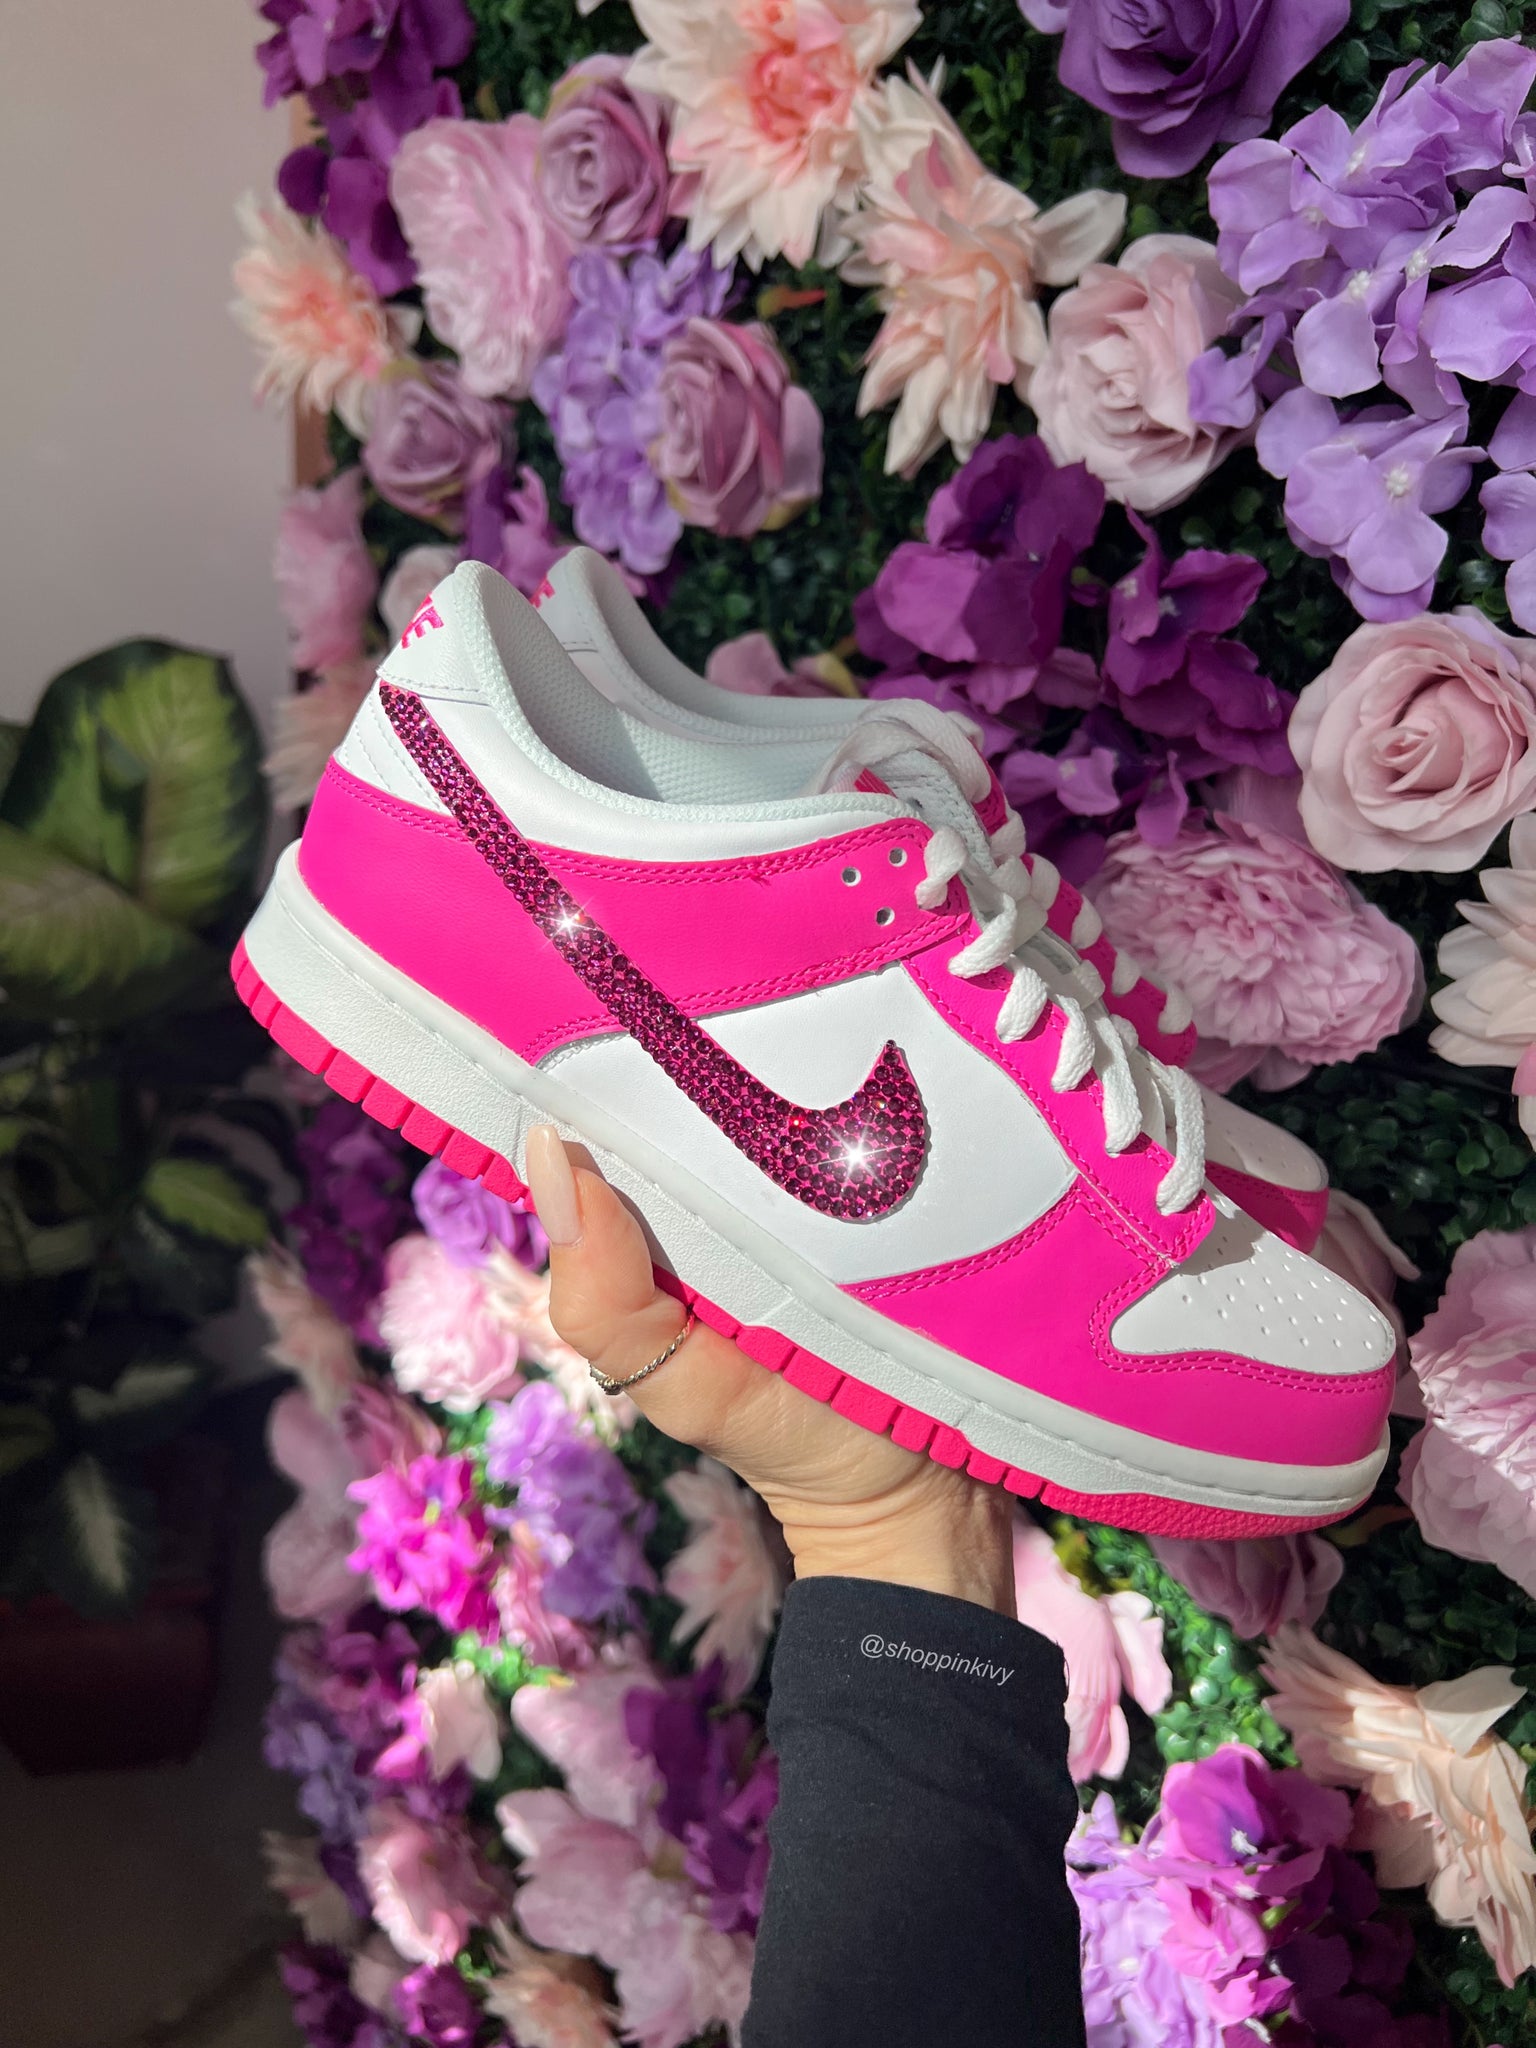 Hot Pink Swarovski Womens Nike Dunk Shoes Pink Ivy